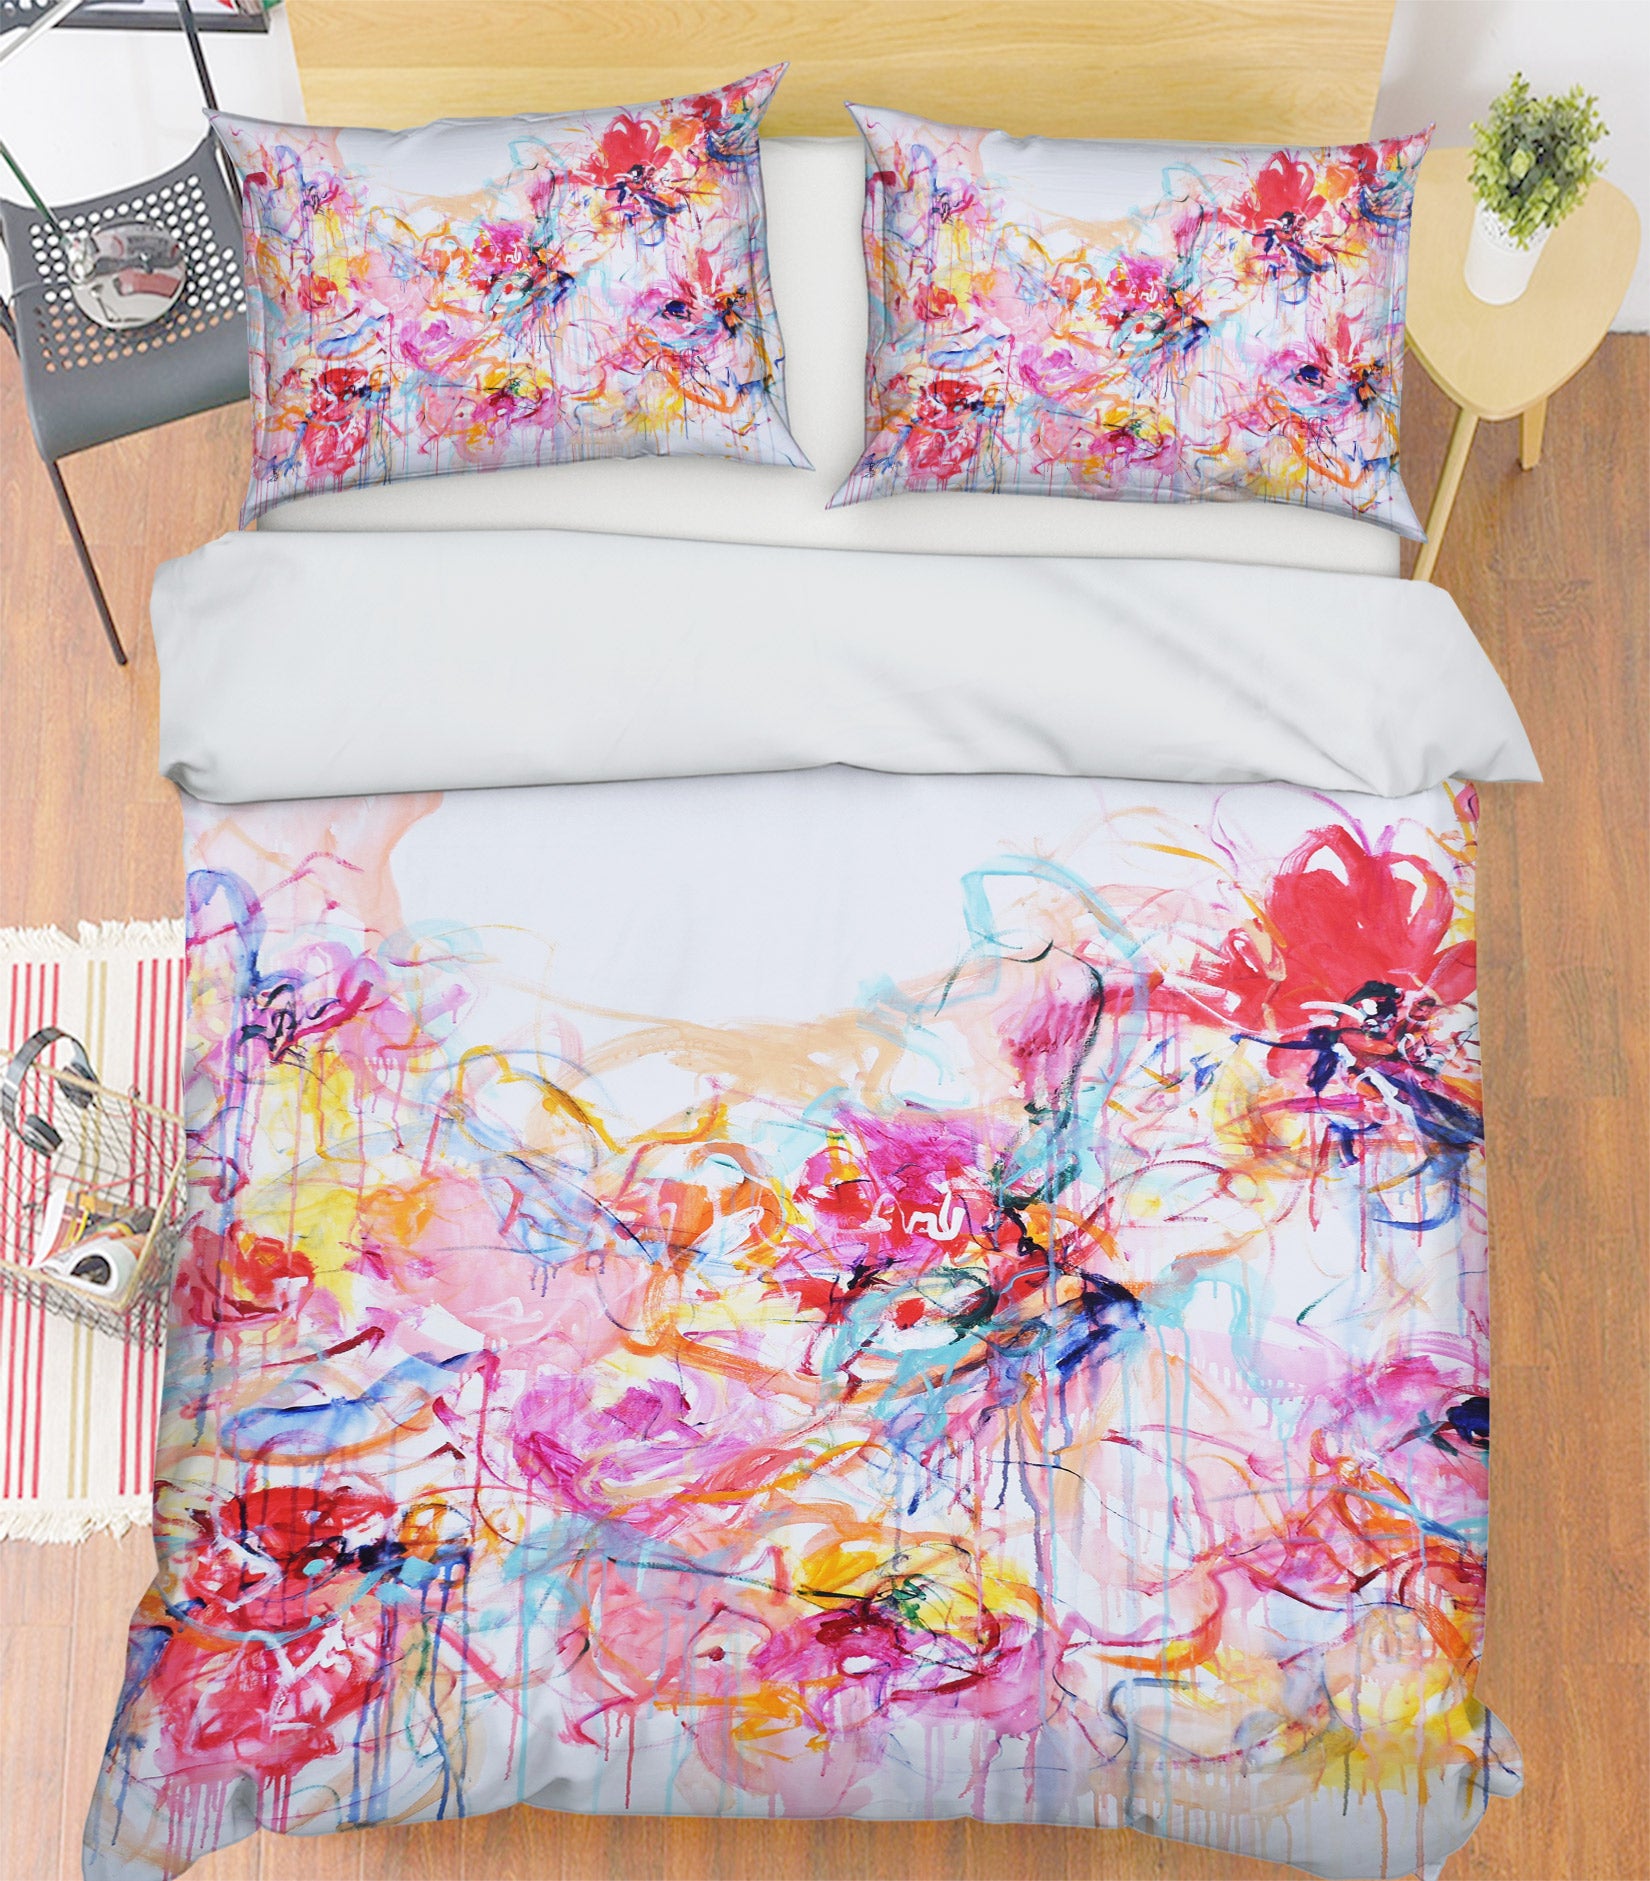 3D Color Mixed Pigments 1116 Misako Chida Bedding Bed Pillowcases Quilt